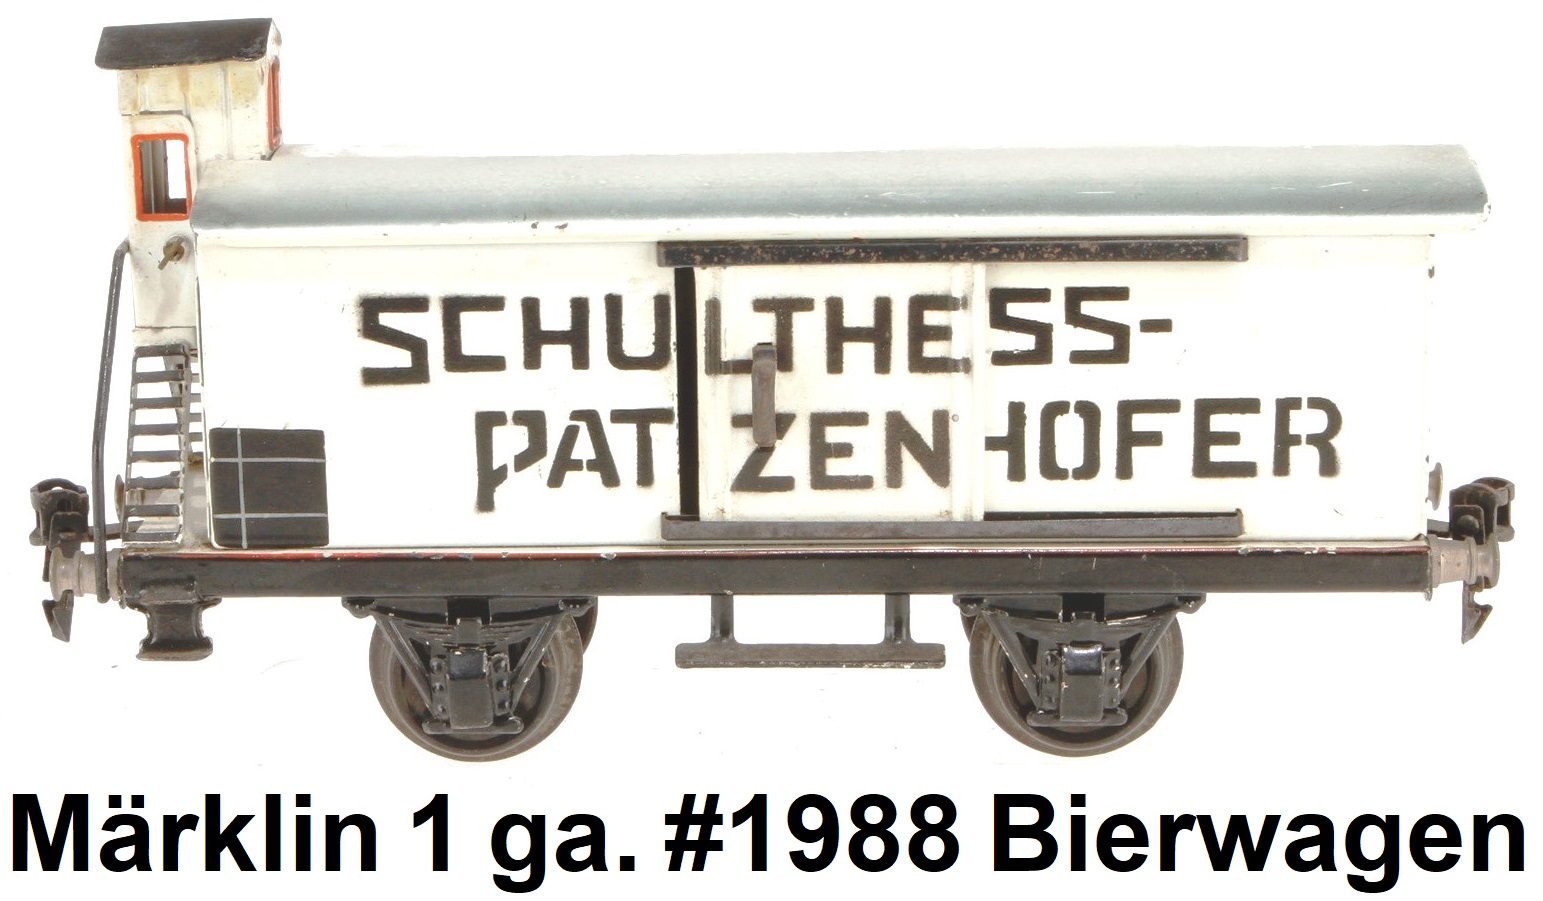 Märklin 1 gauge #1988 Schultheiss Patzenhofer Bierwagen